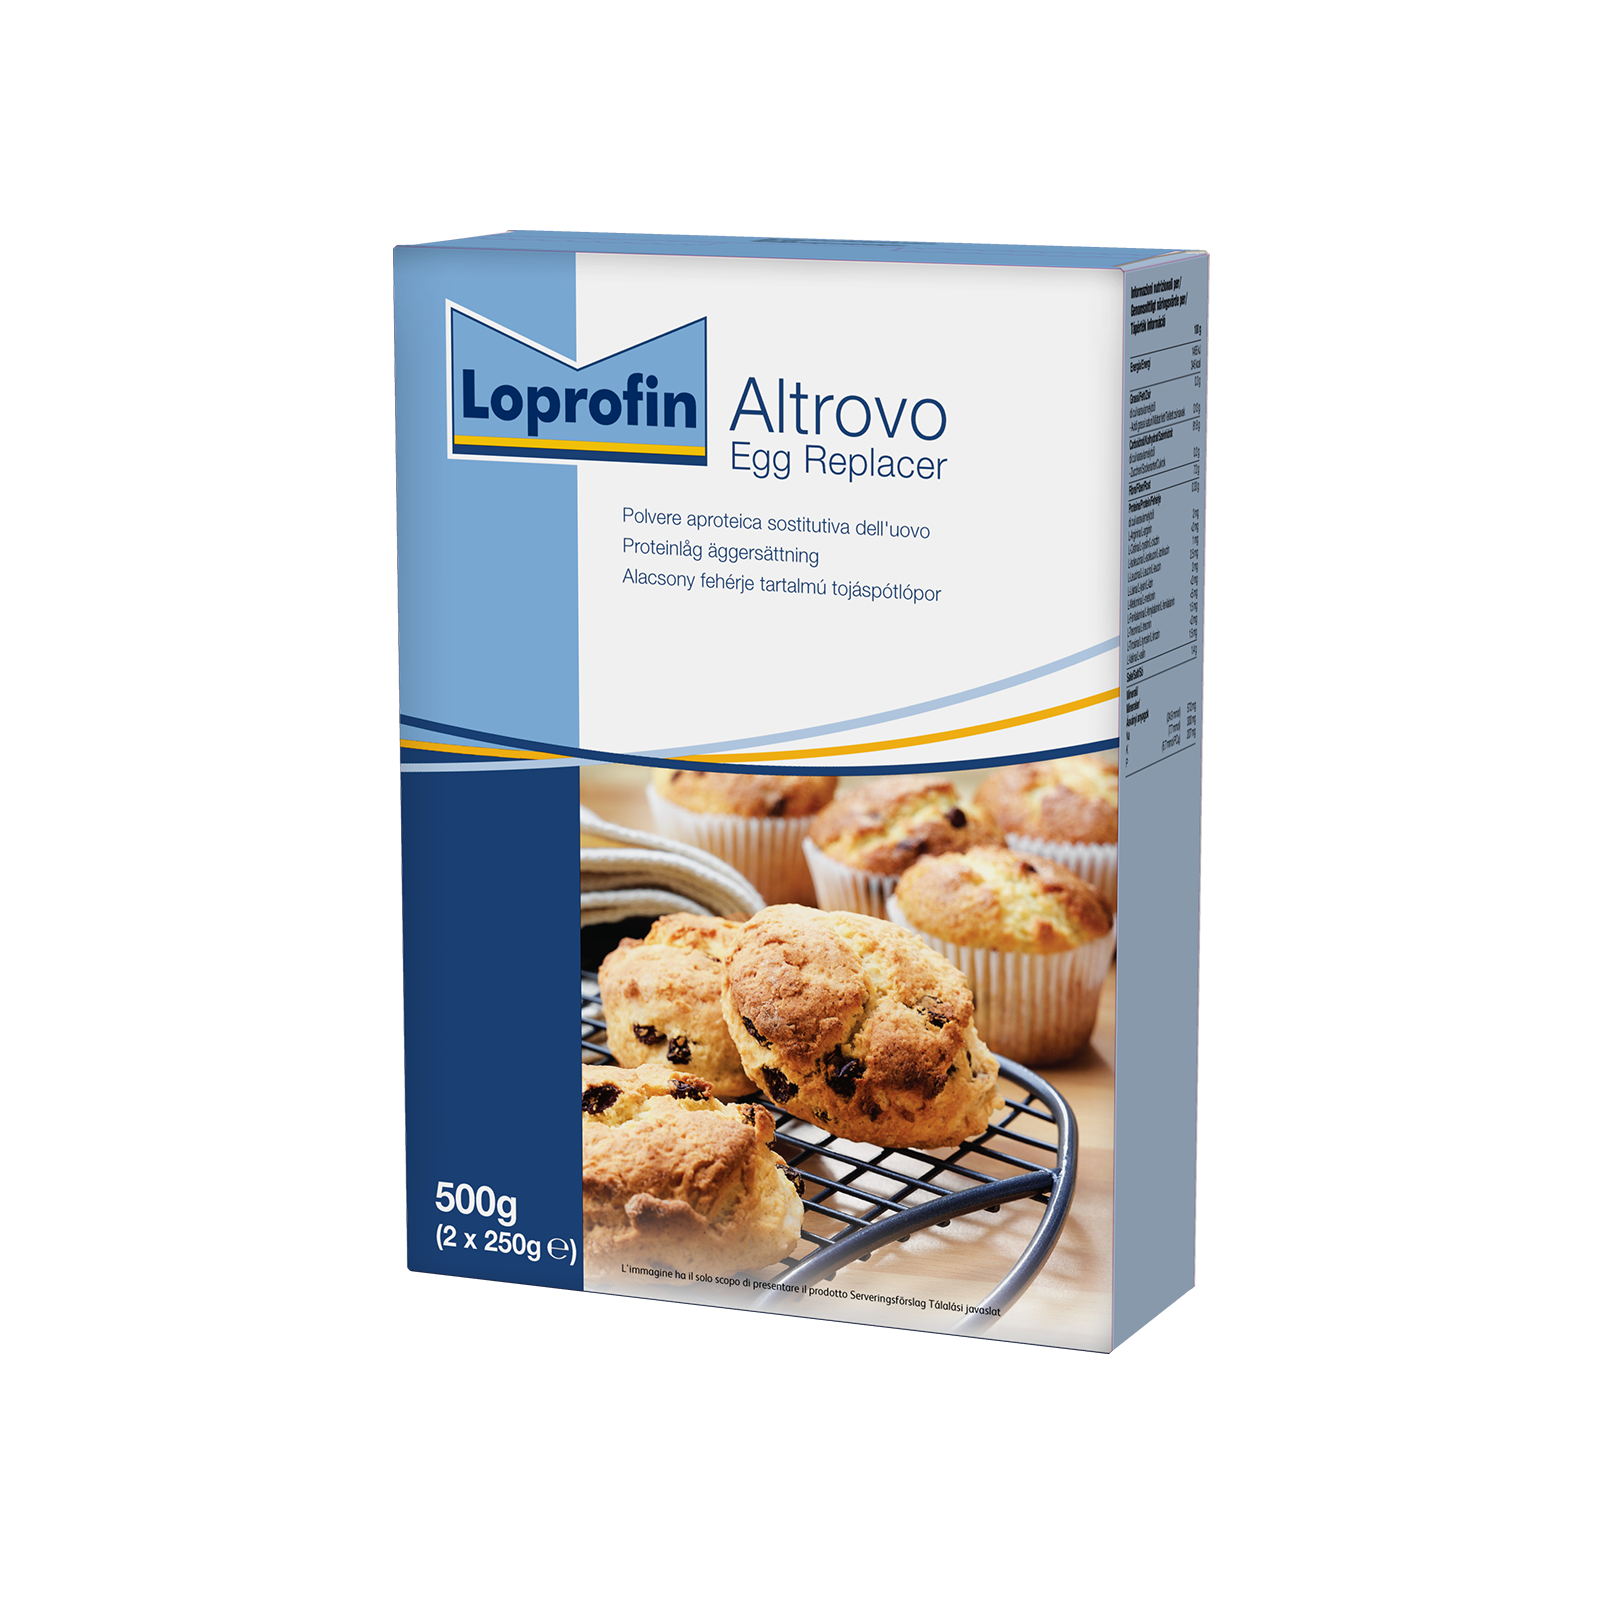 Loprofin Altrovo scatola da 500g | Nutricia